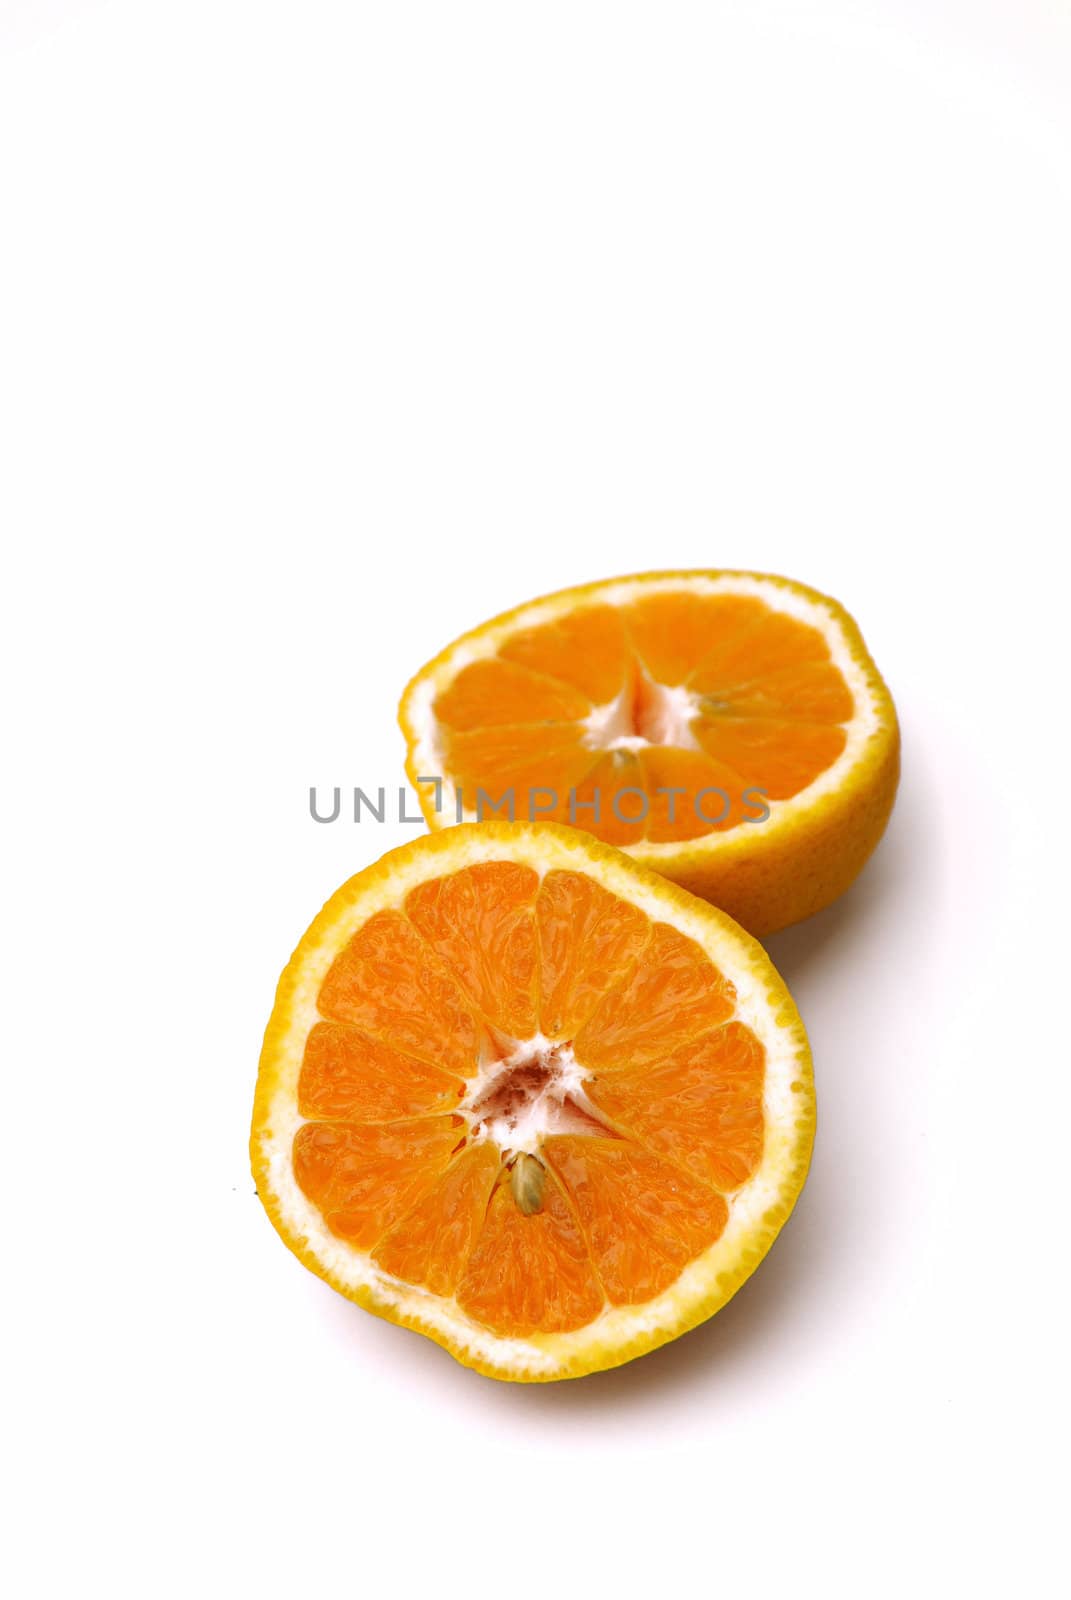 Oranges by pazham